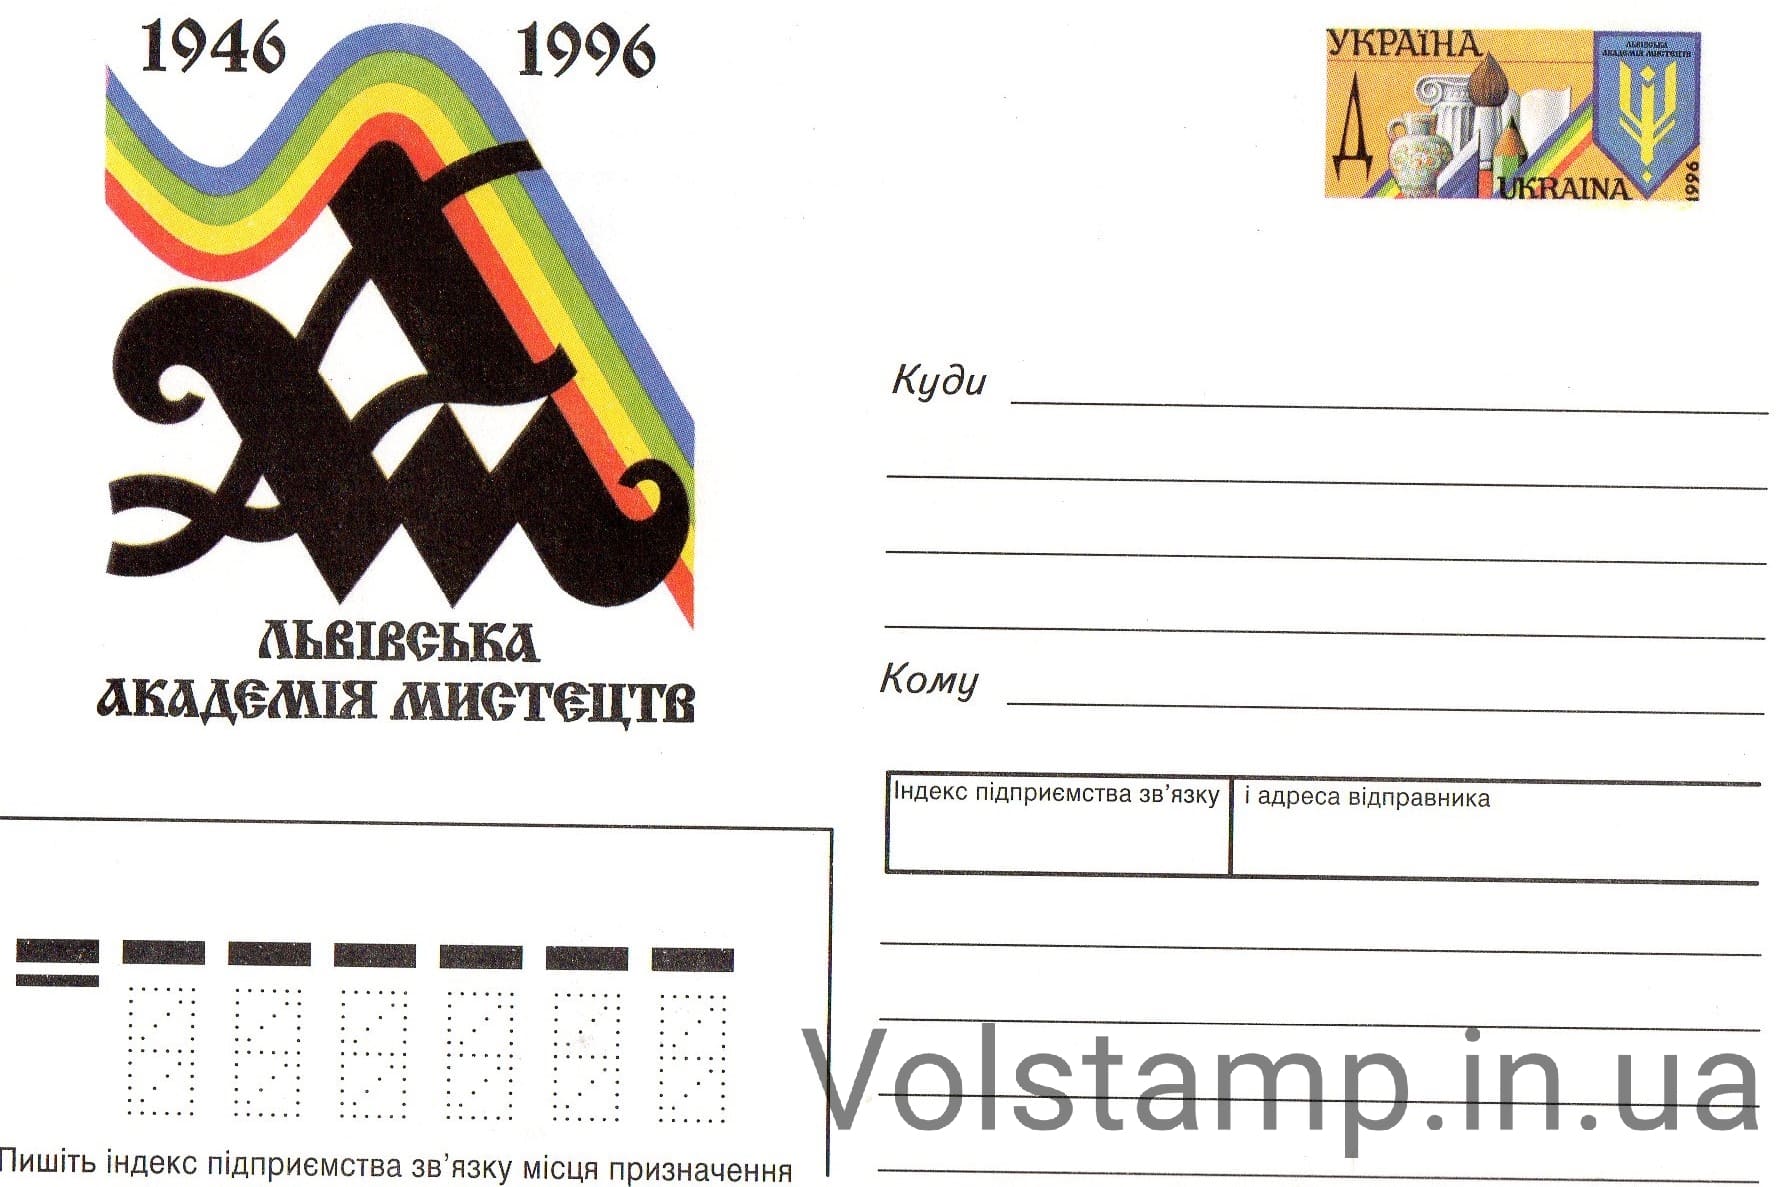 1996 ХМК с ОМ Львовская академия искусства №113